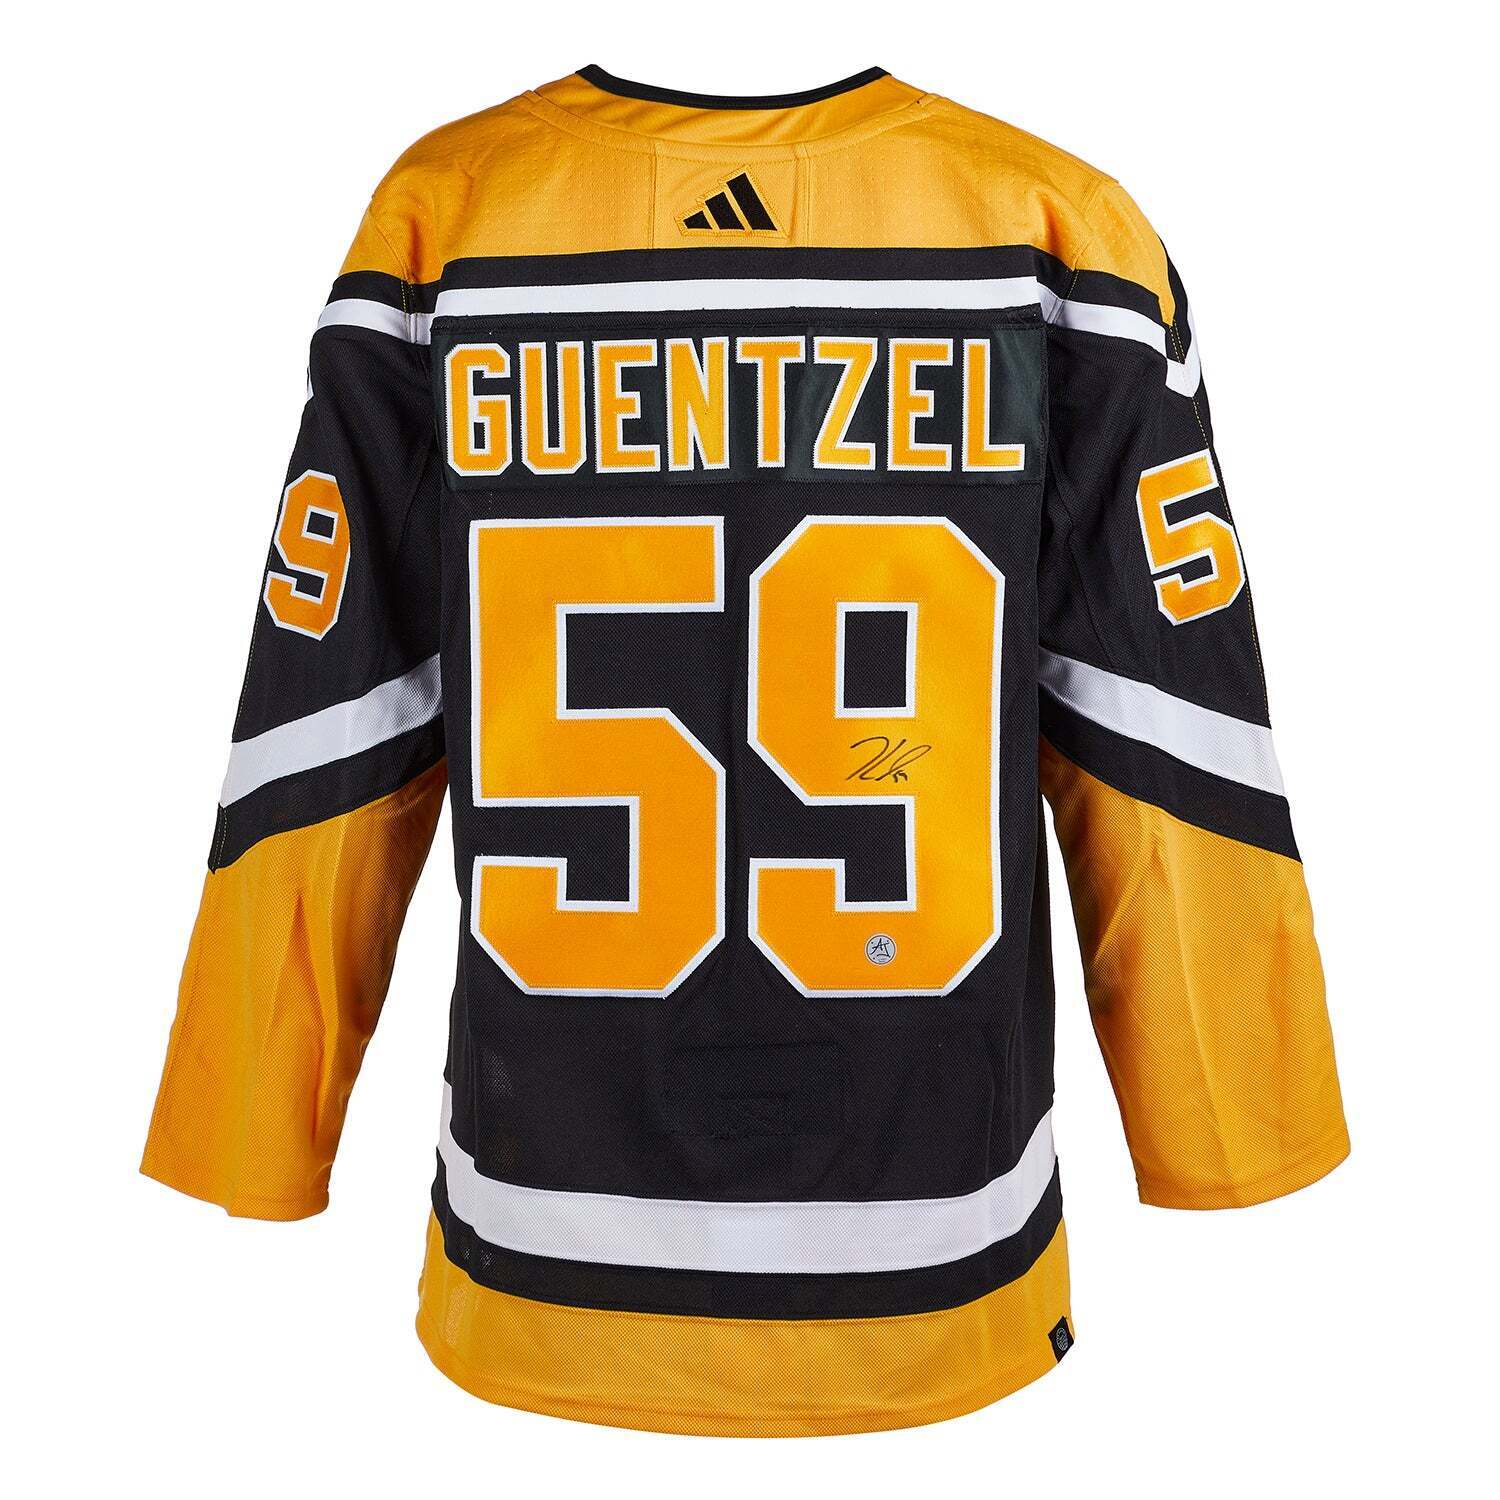 Jake Guentzel Pittsburgh Penguins Jersey black